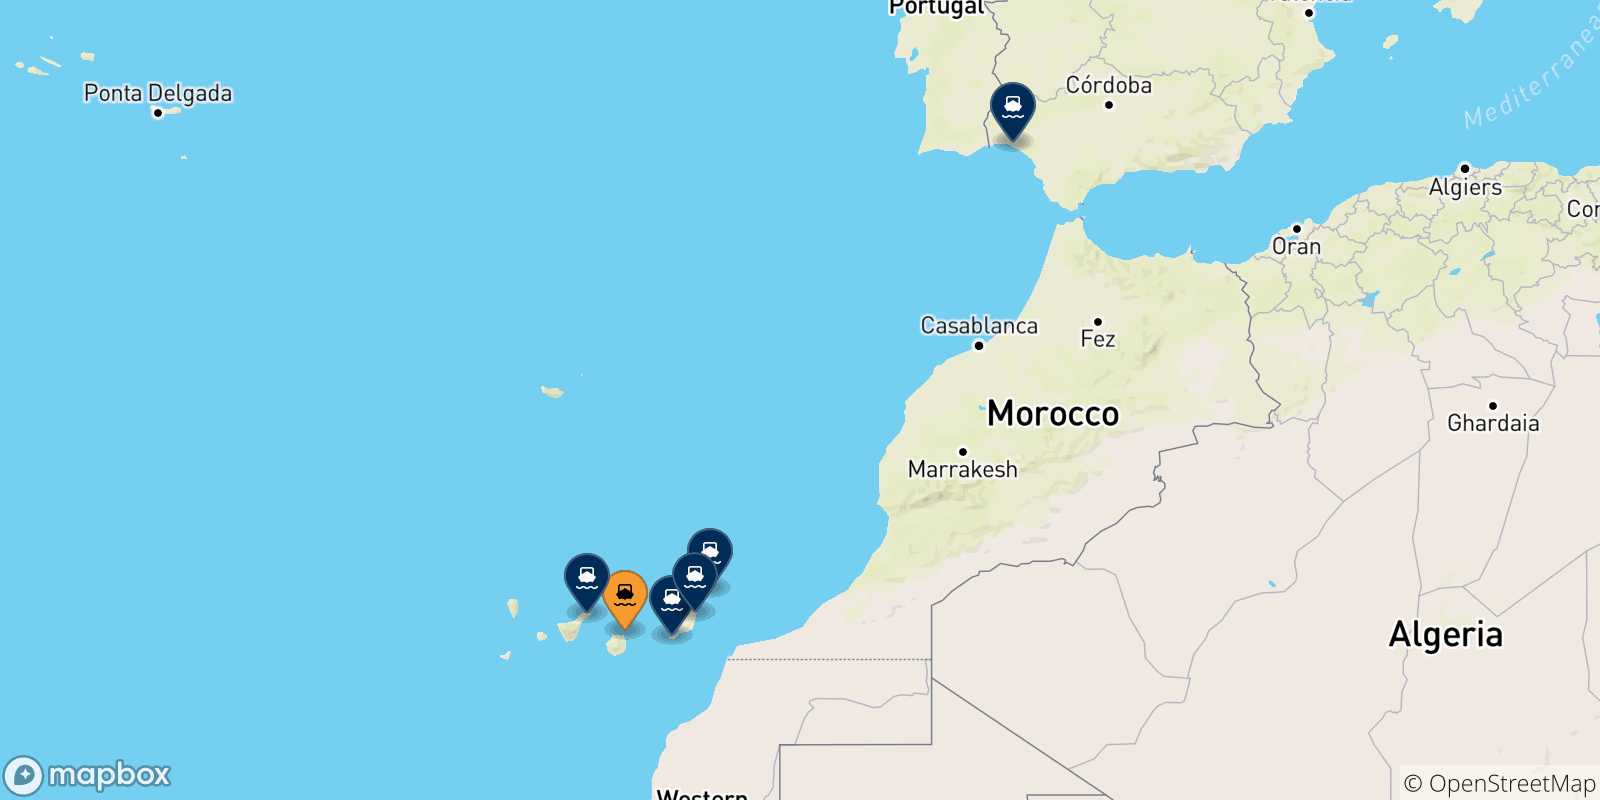 Mappa delle possibili rotte tra Las Palmas De Gran Canaria e la Spagna